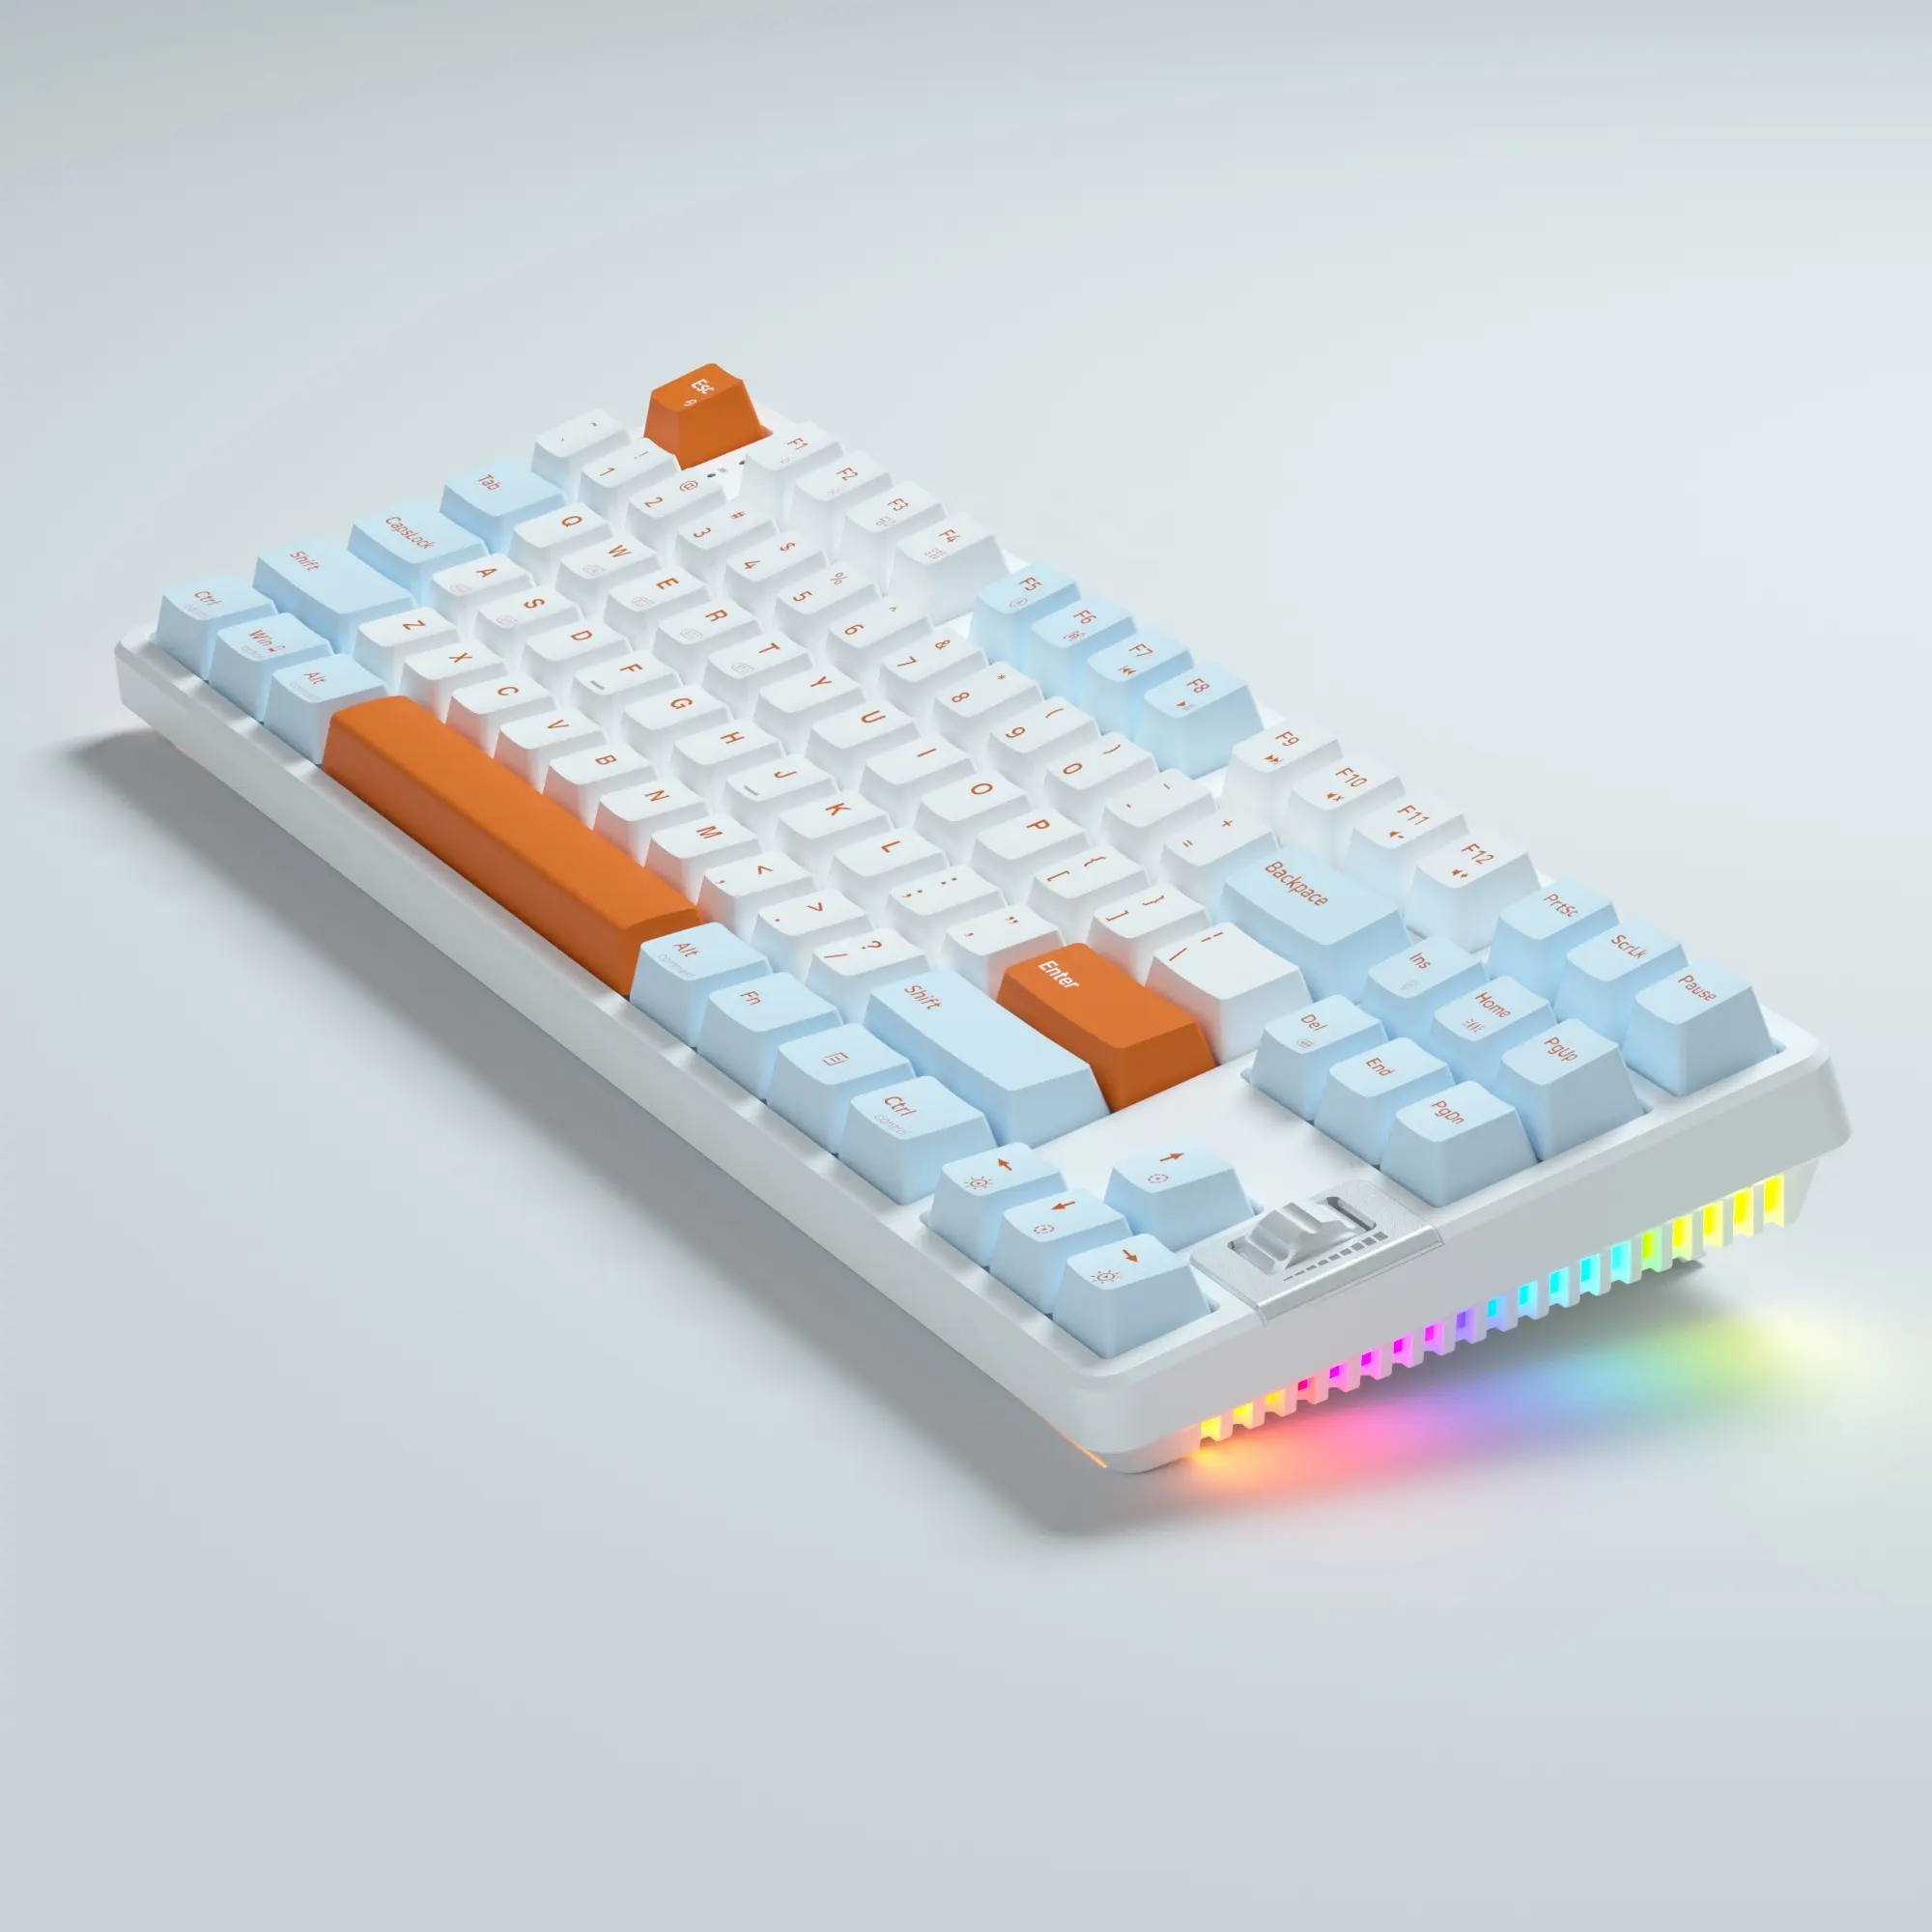 Звездная K87k RK R87 teclado игровая клавиатура tkl Проводная мультимедийная механическая клавиатура 87 клавиш